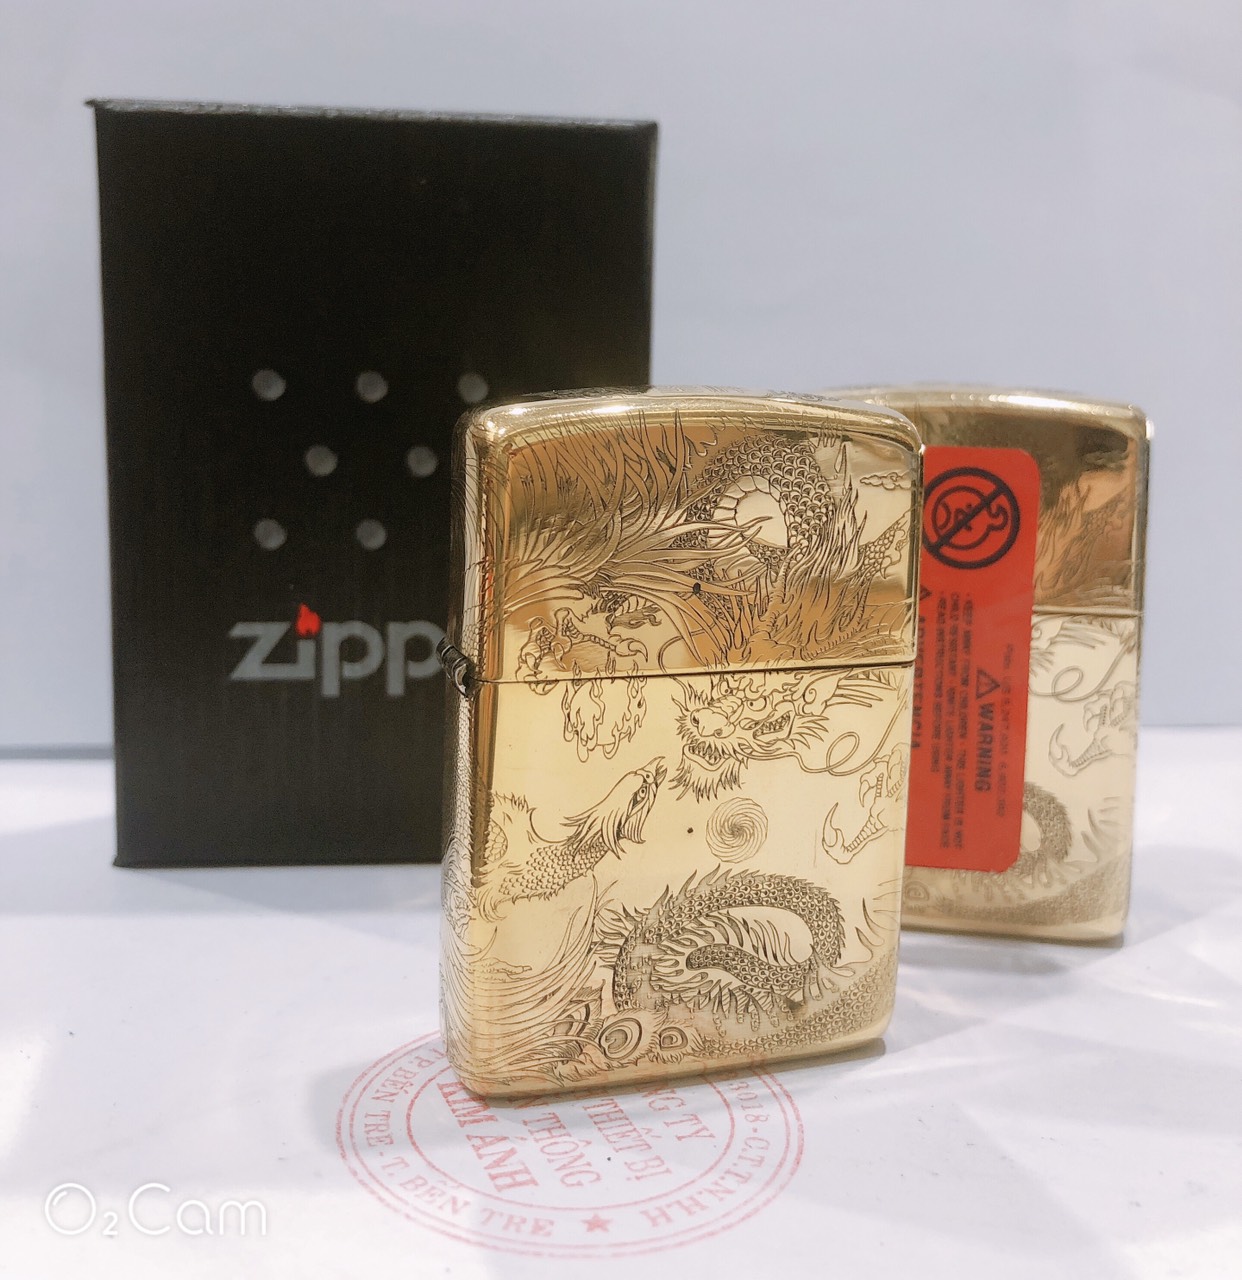 LZD Bật lửa hộp quẹt Zippo Armor vỏ dầy khắc chìm chủ đề Long Phụng Giao Tranh Hàng loại 1 vỏ bằng đồng có tem đỏ